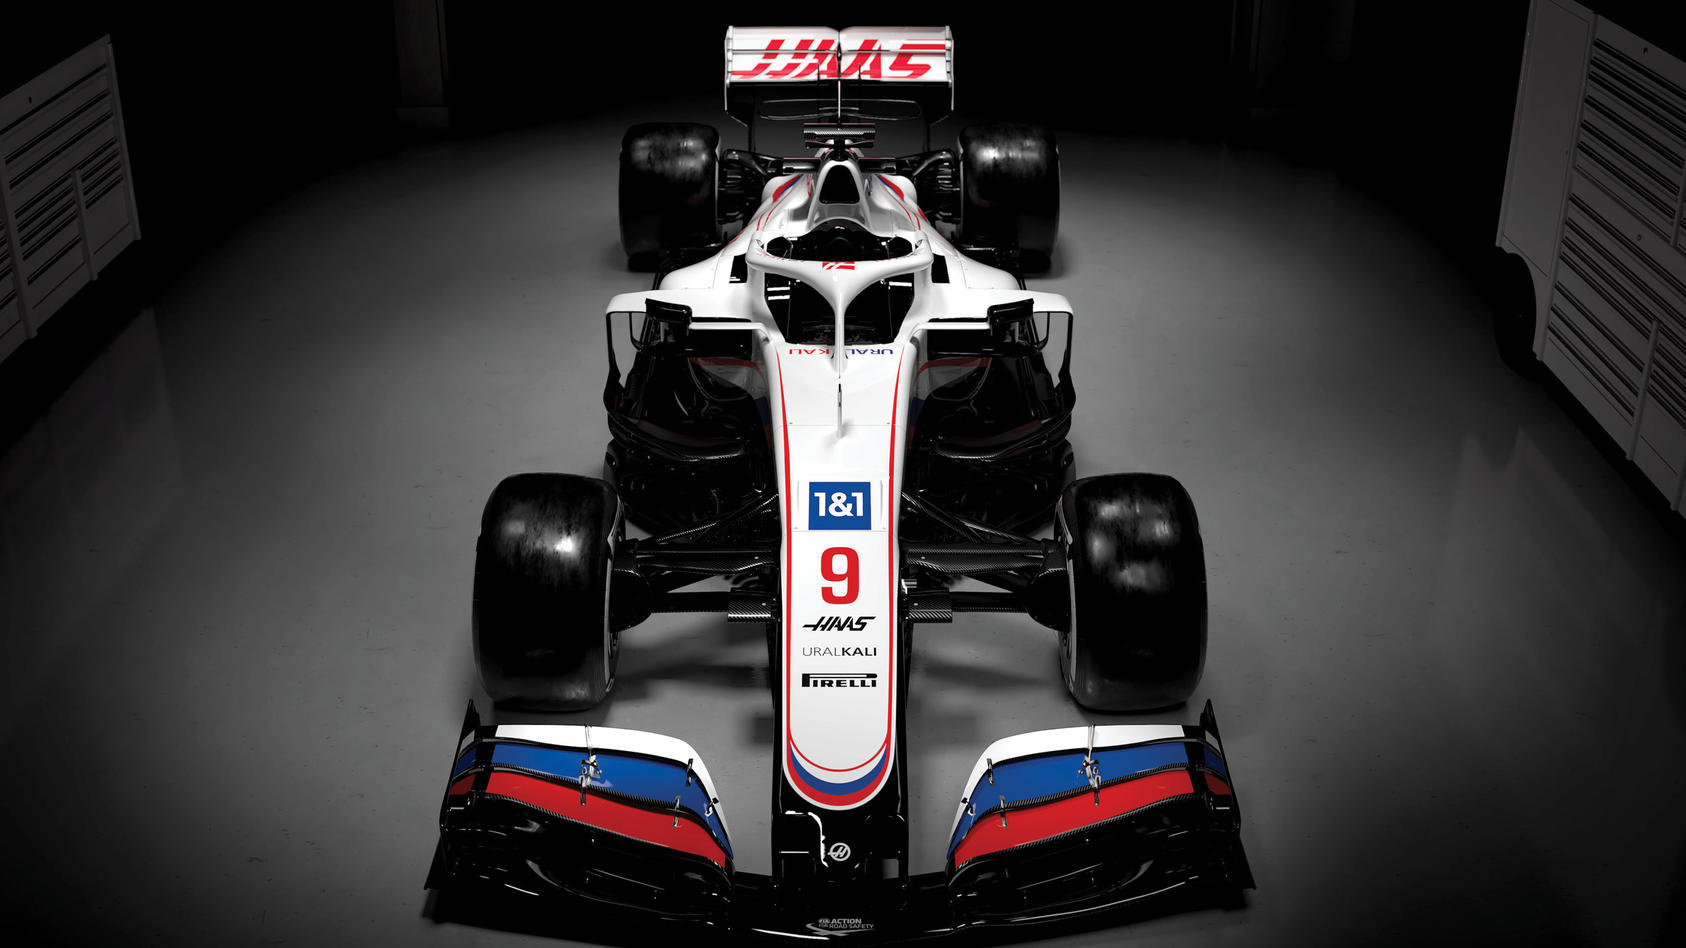 HANDOUT - 04.03.2021, ---: Die am 04. März 2021 vom Uralkali-Haas-F1-Team zur Verfügung gestellte Aufnahme zeigt den neuen Formel-1-Rennwagen mit der Bezeichnung VF-21. Foto: -/Haas F1 Team/dpa - ACHTUNG: Nur zur redaktionellen Verwendung und nur mit